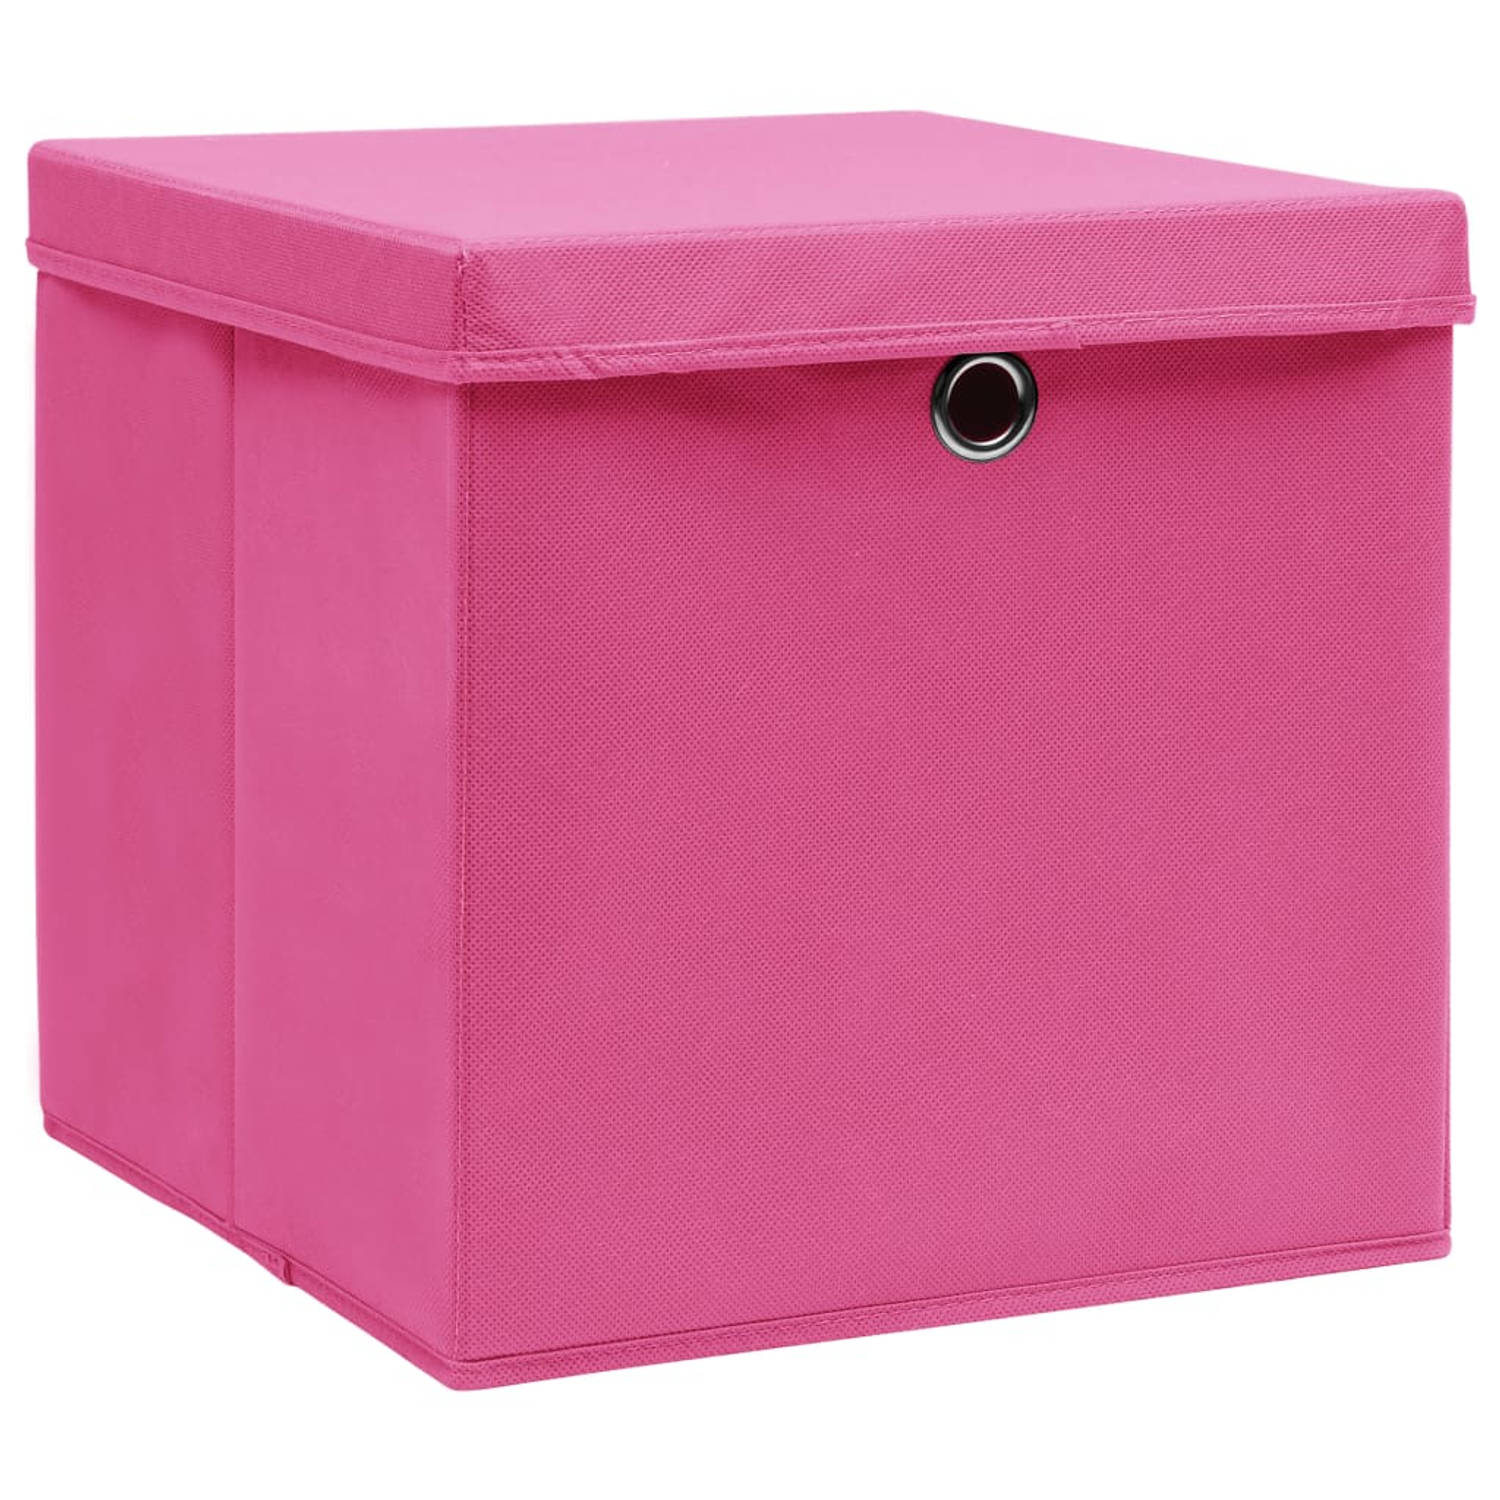 The Living Store Opbergboxen - Roze Nonwoven Stof - 32x32x32 cm - Inklapbaar - Met deksels - Levering bevat 10 stuks